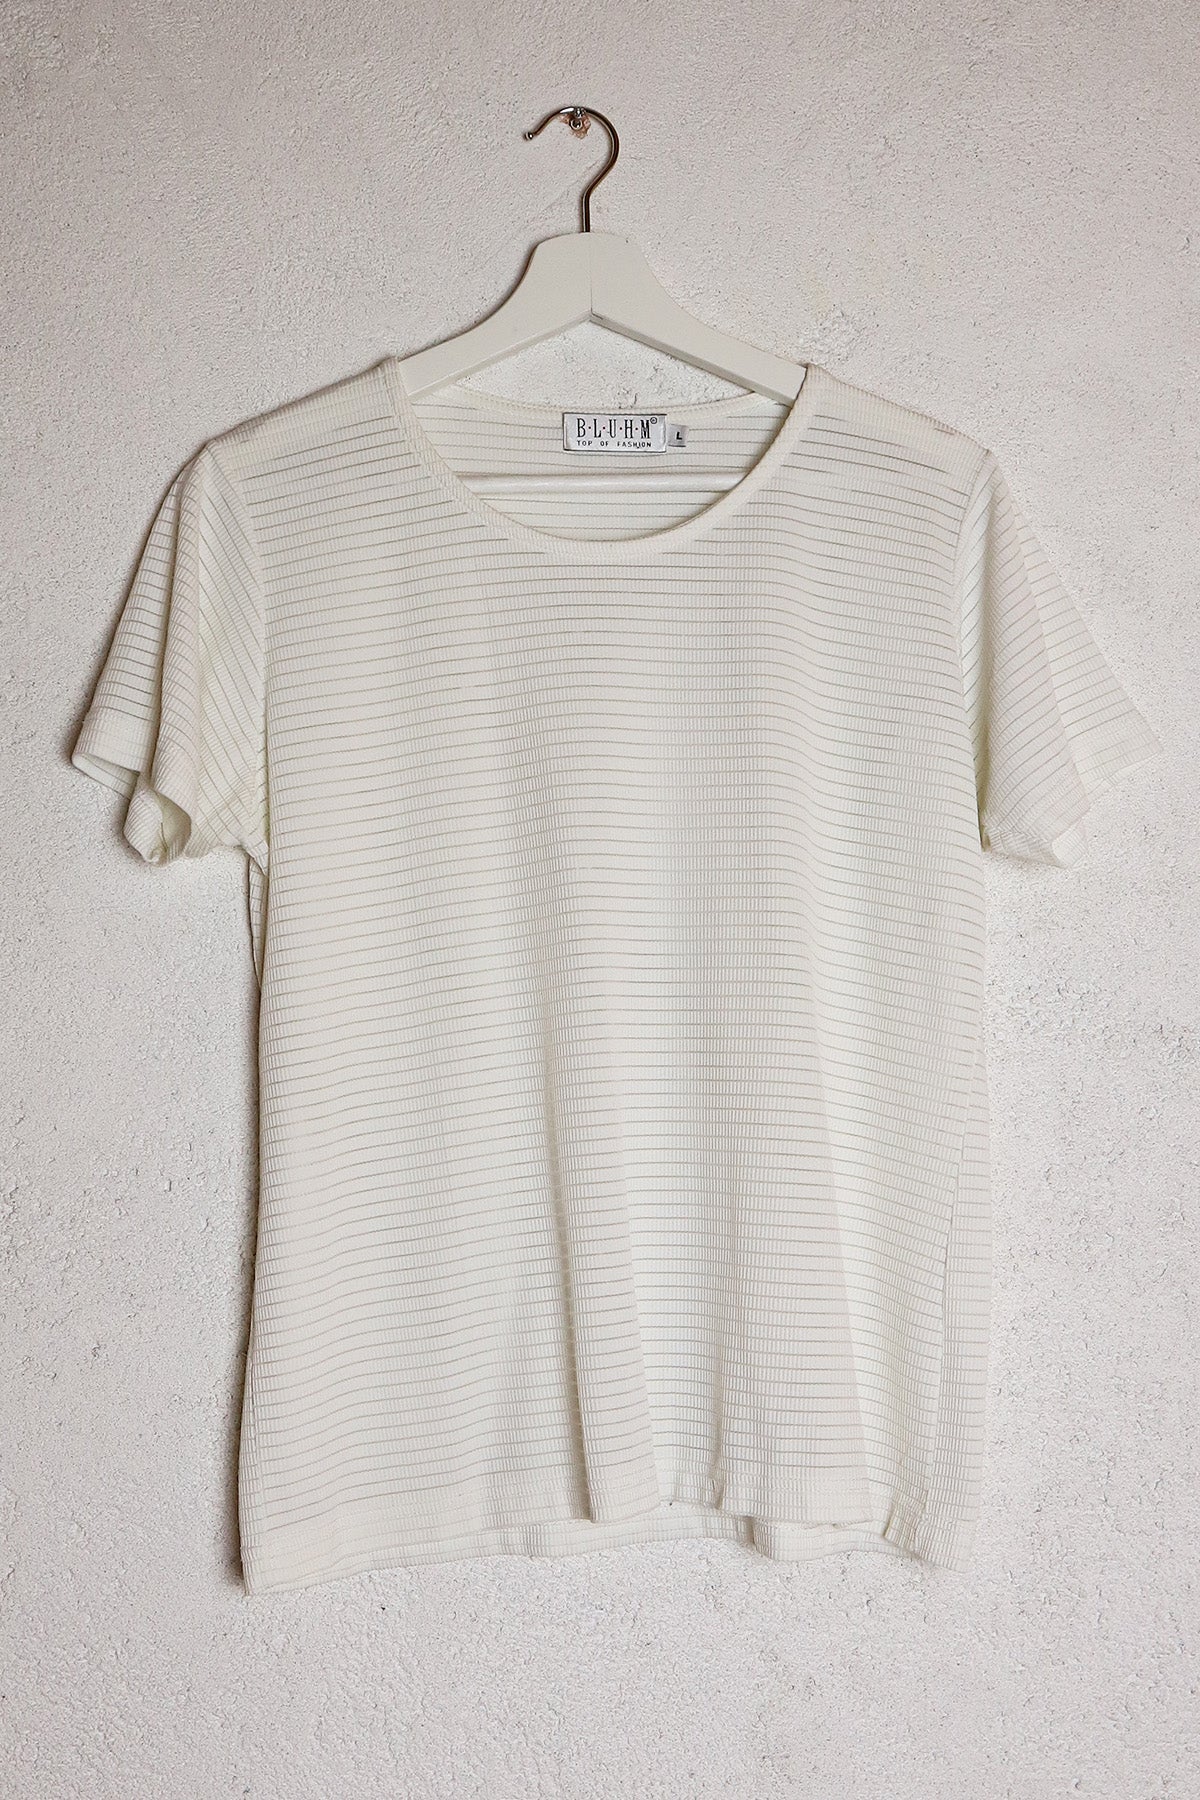 T-Shirt Vintage Weiß ( Gr. S/M)